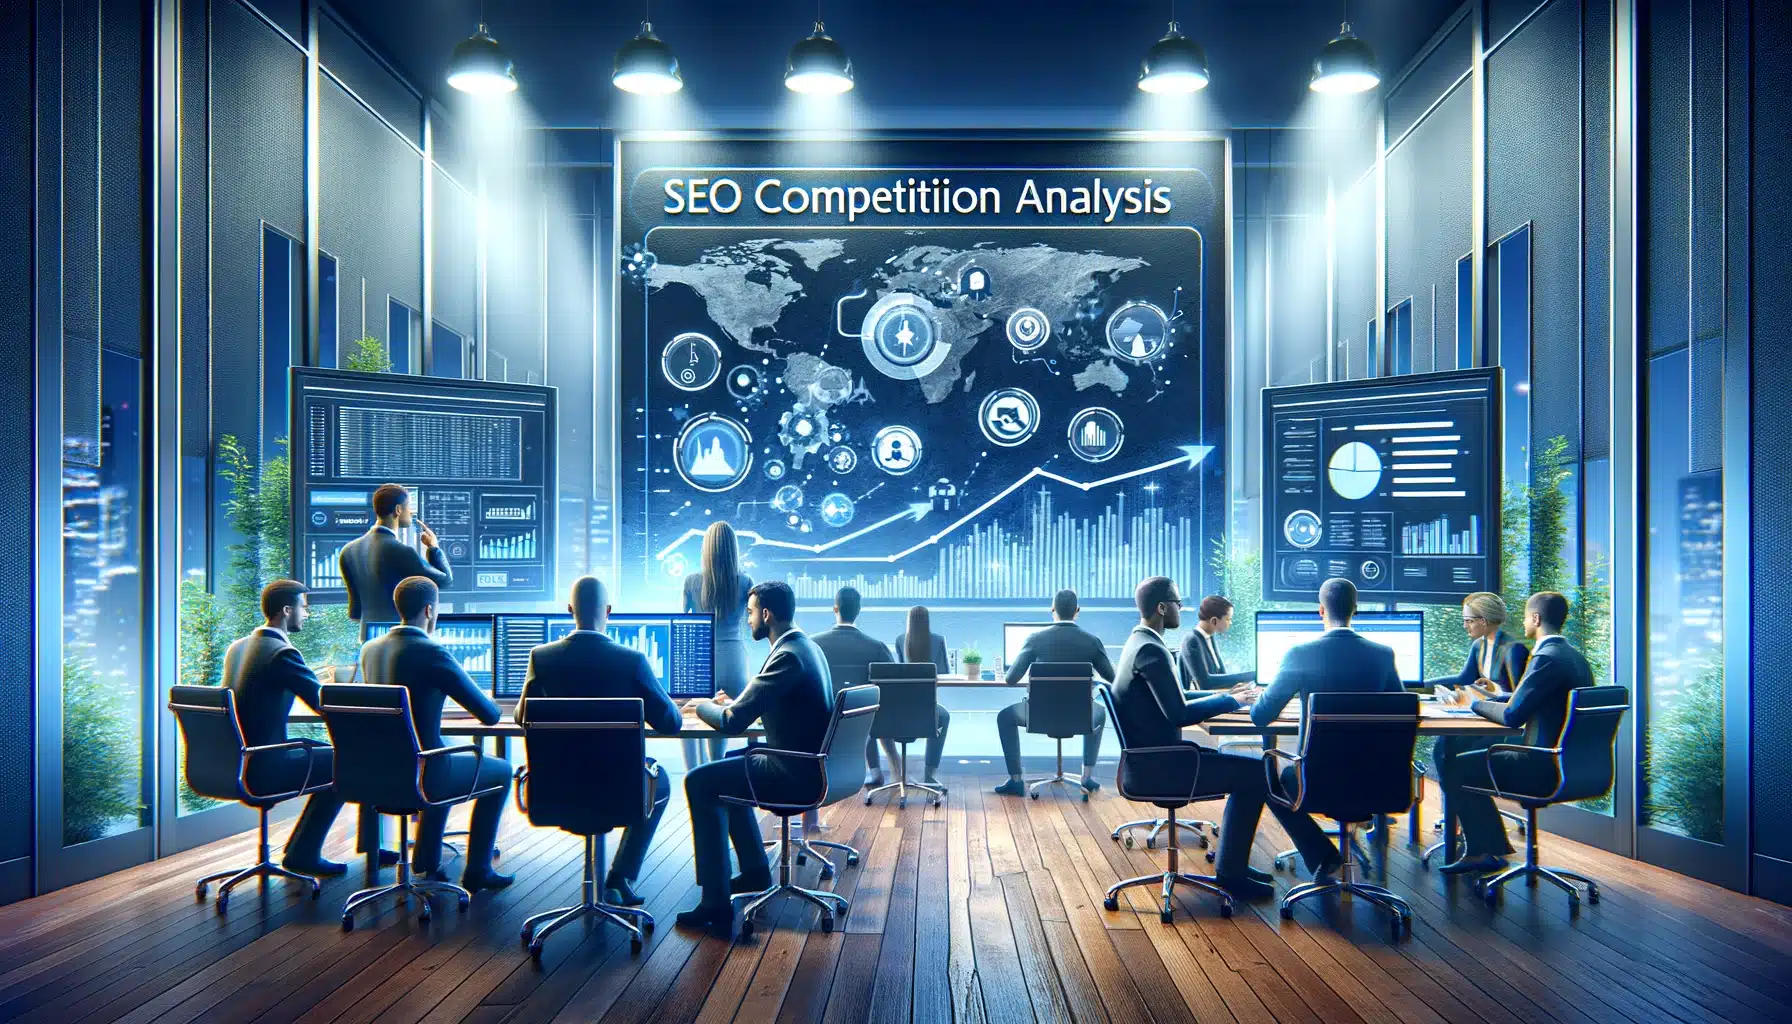 SEO-Wettbewerbsanalyse in einem Unternehmensumfeld